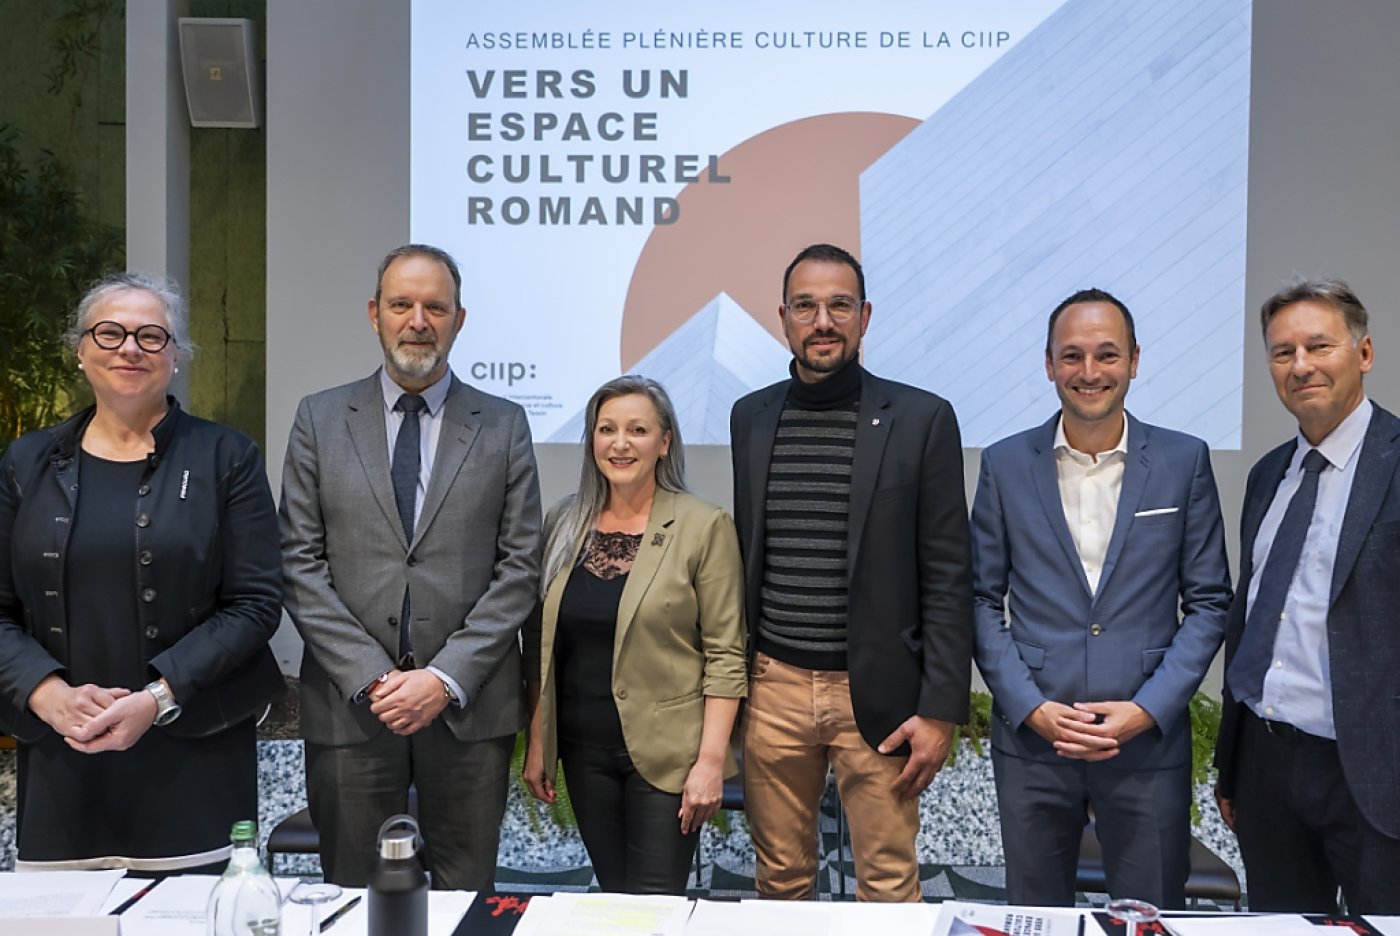 Six ministres de la culture cantonaux de Suisse romande étaient présents vendredi à Lausanne, avec en plus la ministre tessinoise qui est intervenue par vidéoconférence. KEYSTONE